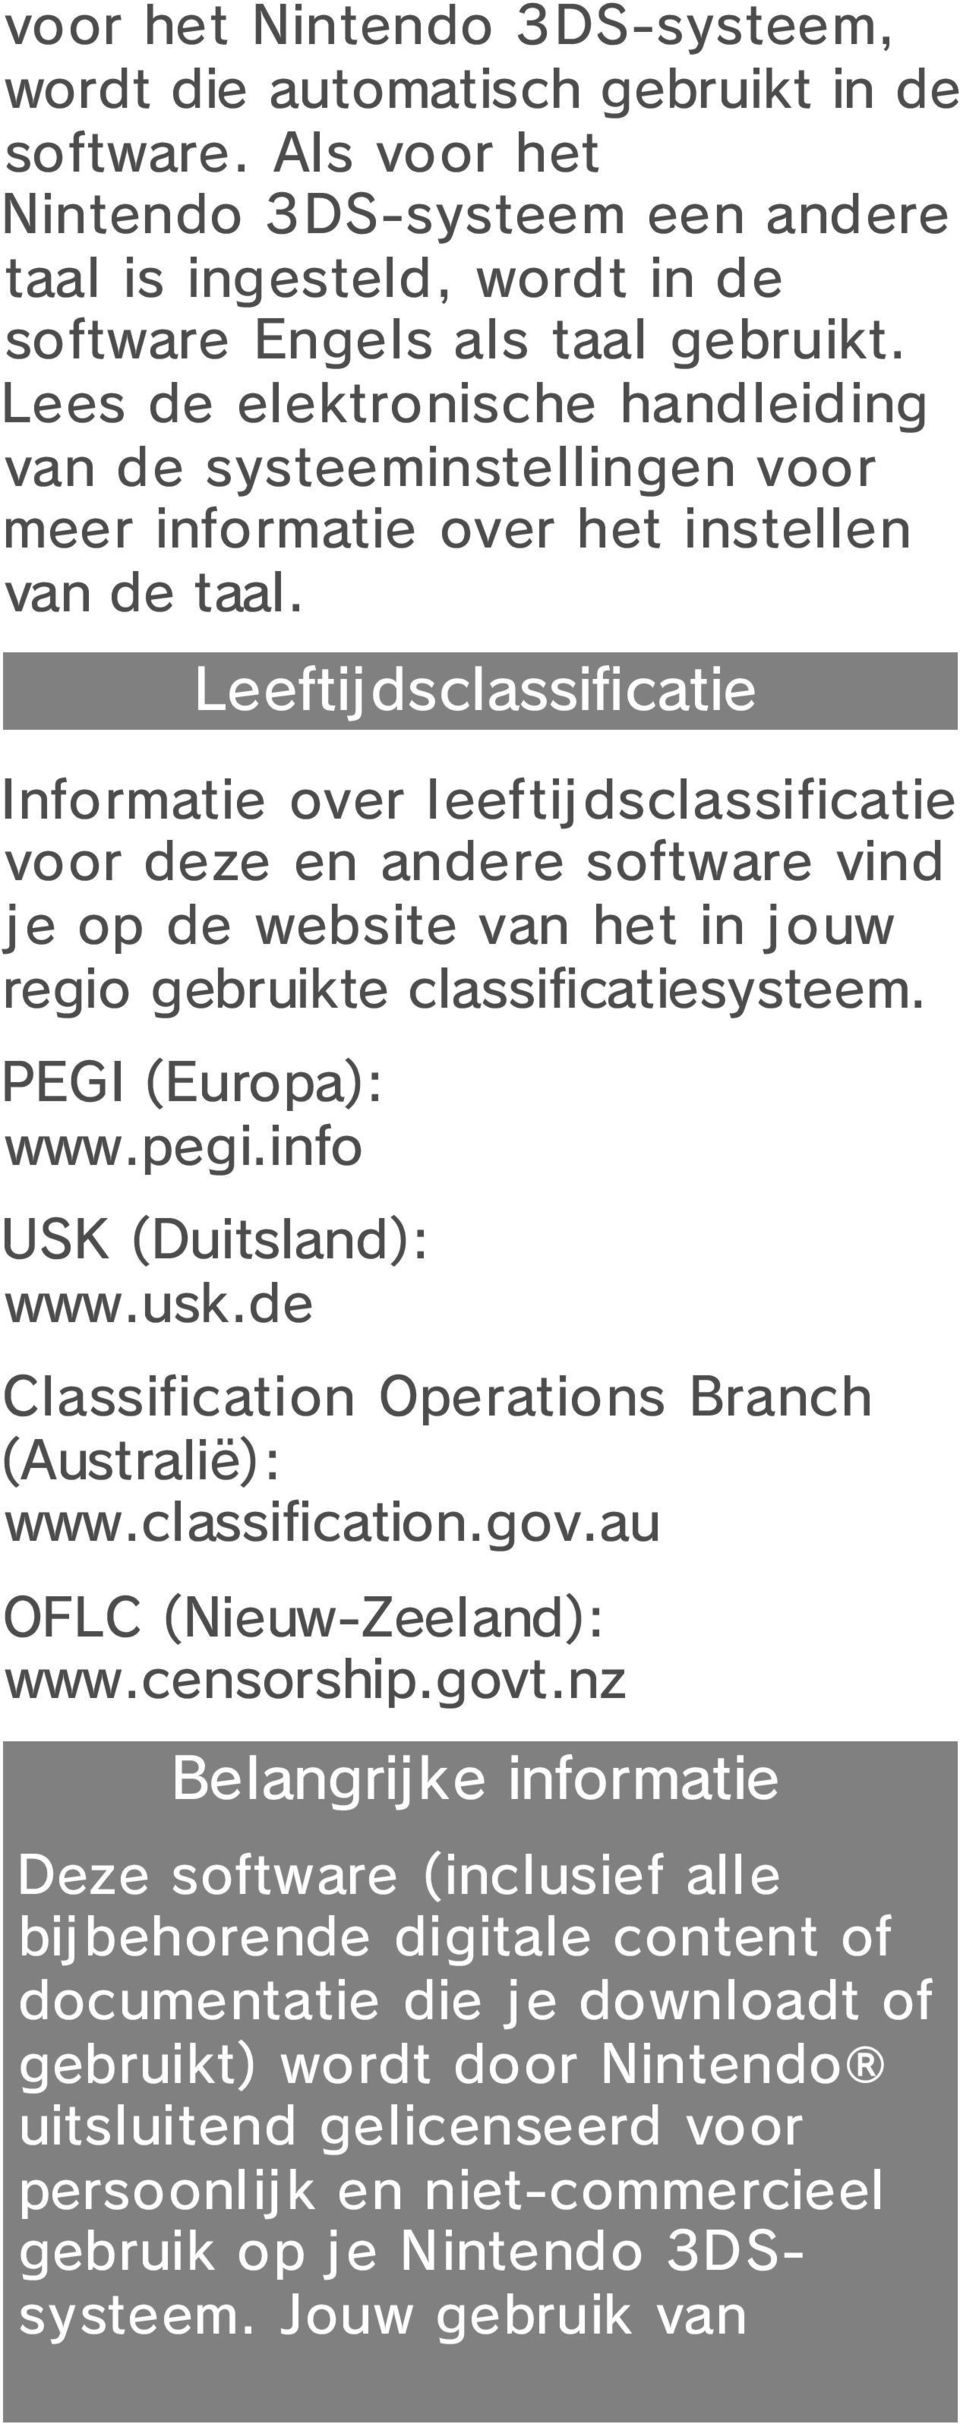 Leeftijdsclassificatie Informatie over leeftijdsclassificatie voor deze en andere software vind je op de website van het in jouw regio gebruikte classificatiesysteem. PEGI (Europa): www.pegi.